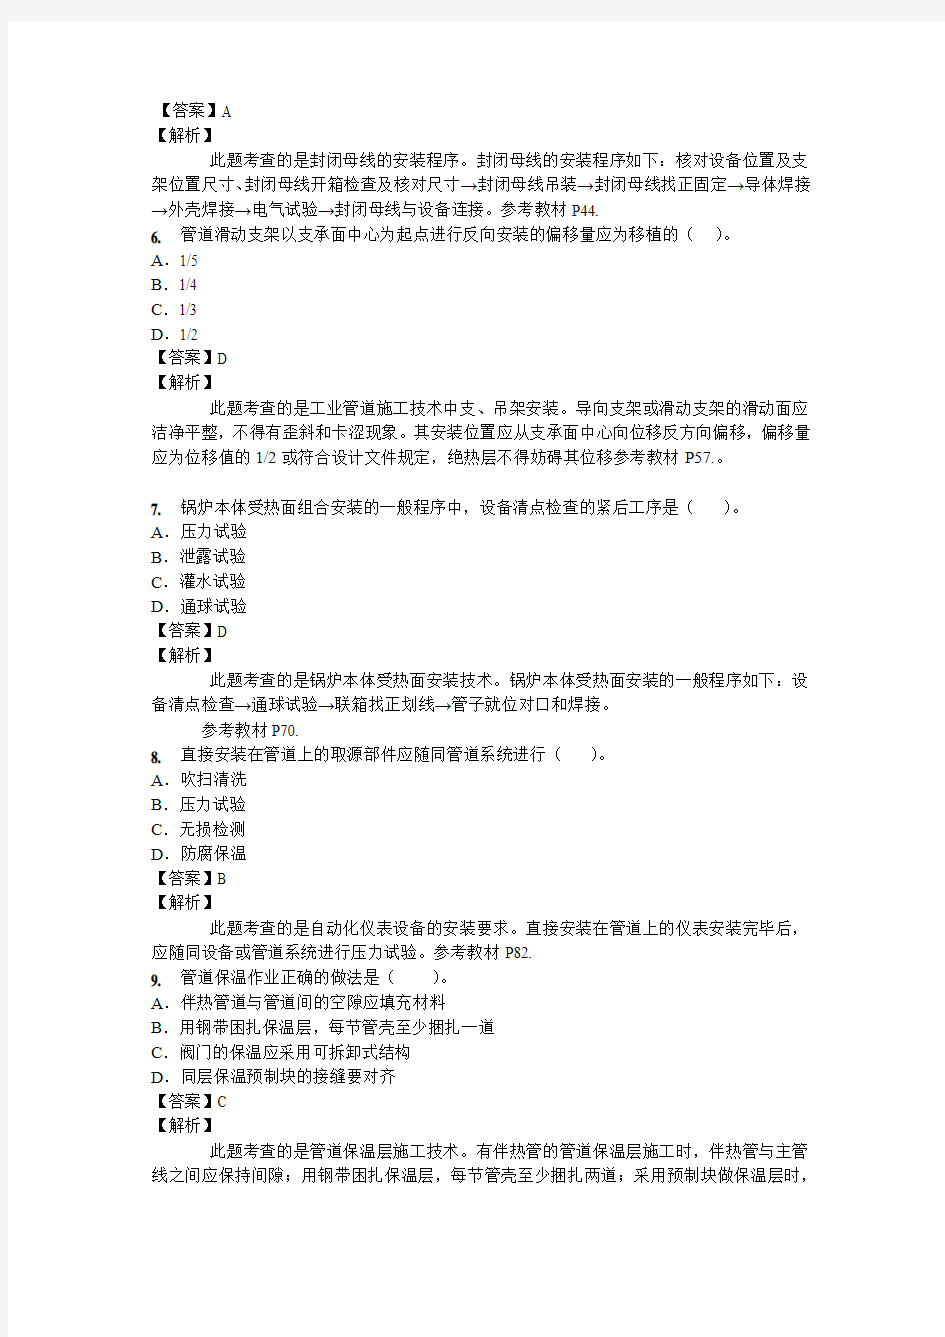 2014年二建机电真题解析-刘伏生-05.28